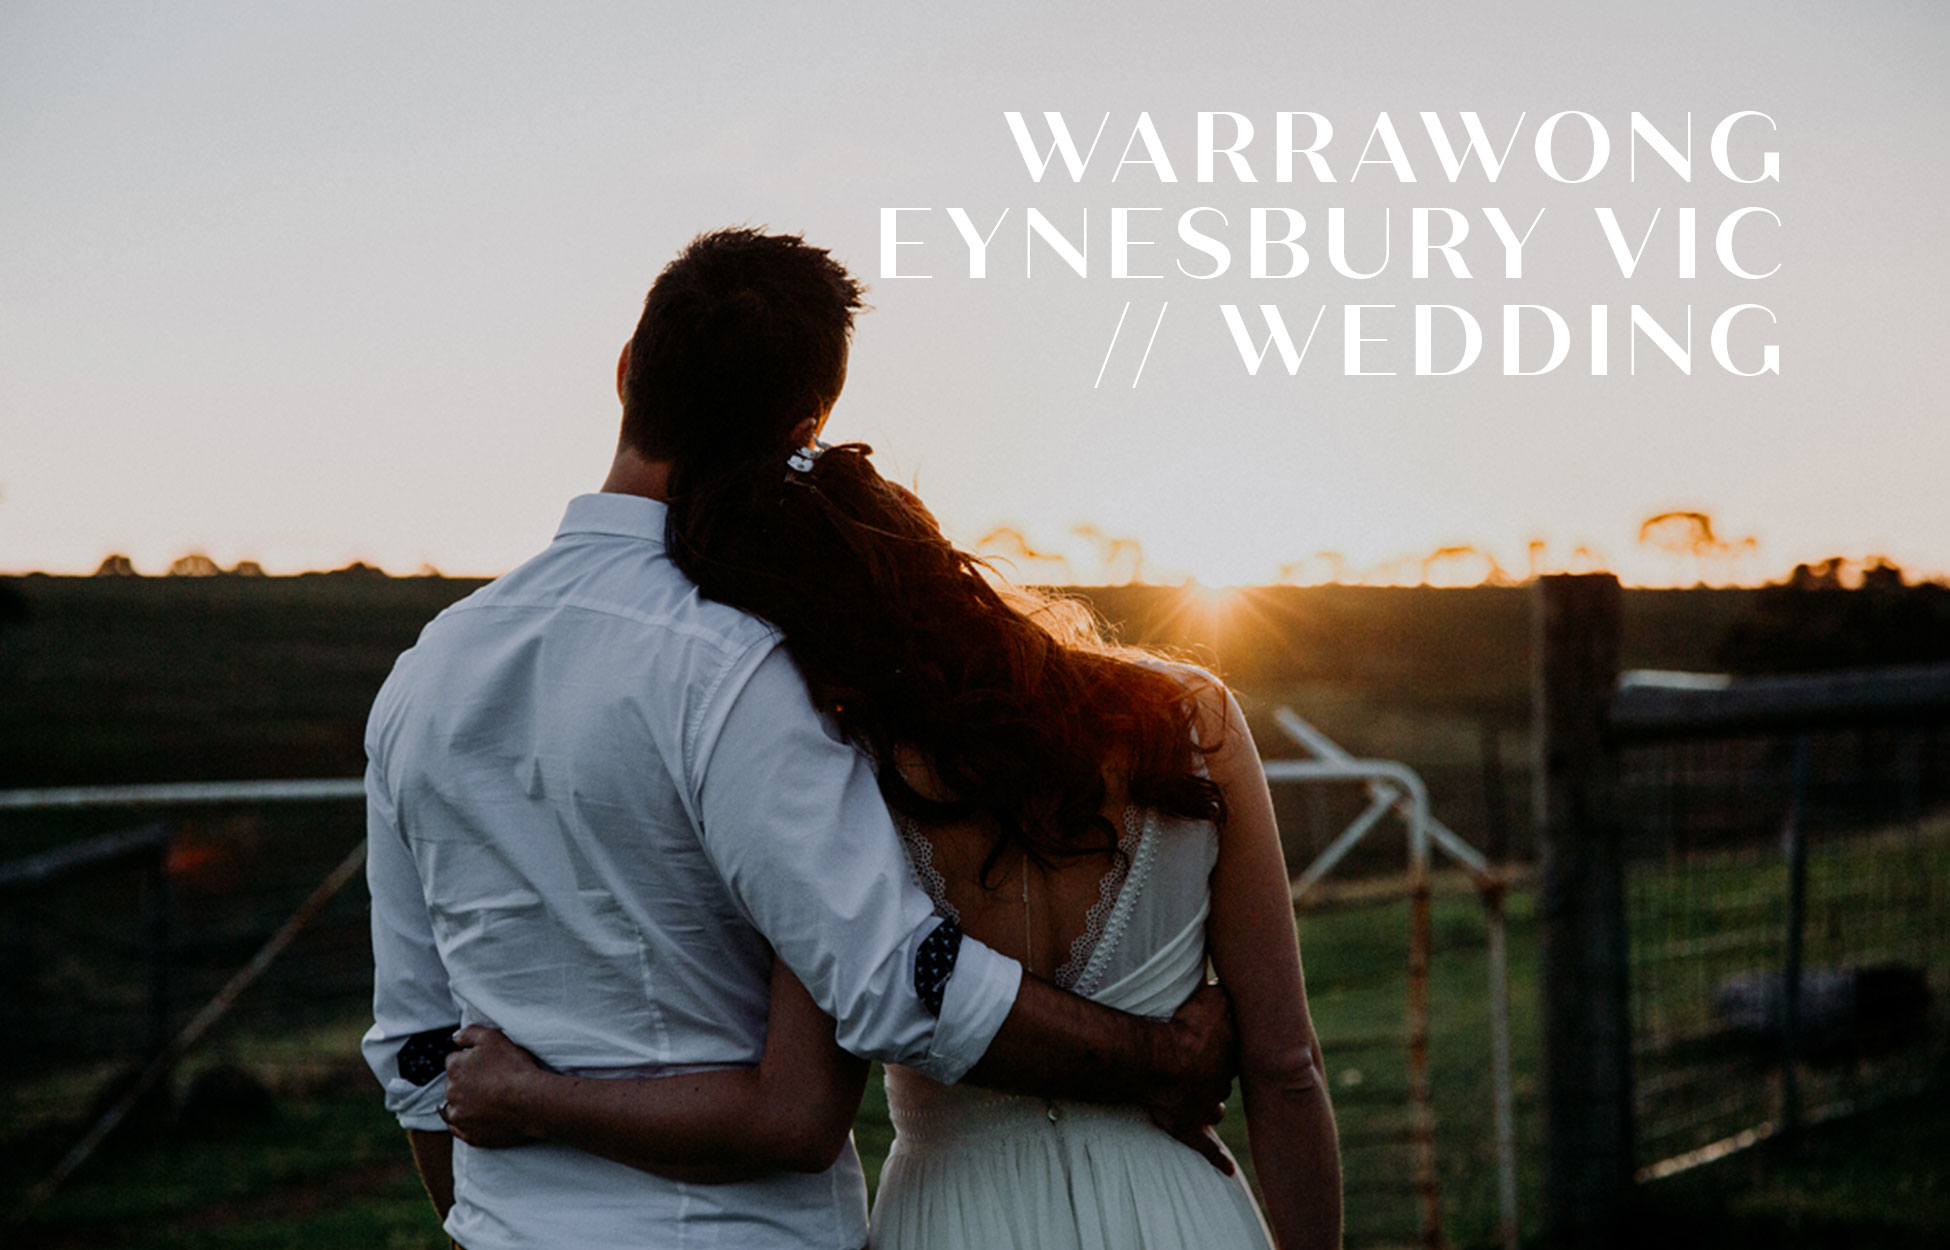 Wedding photography Warrawong Eynesbury VIC Neil Hole Photography